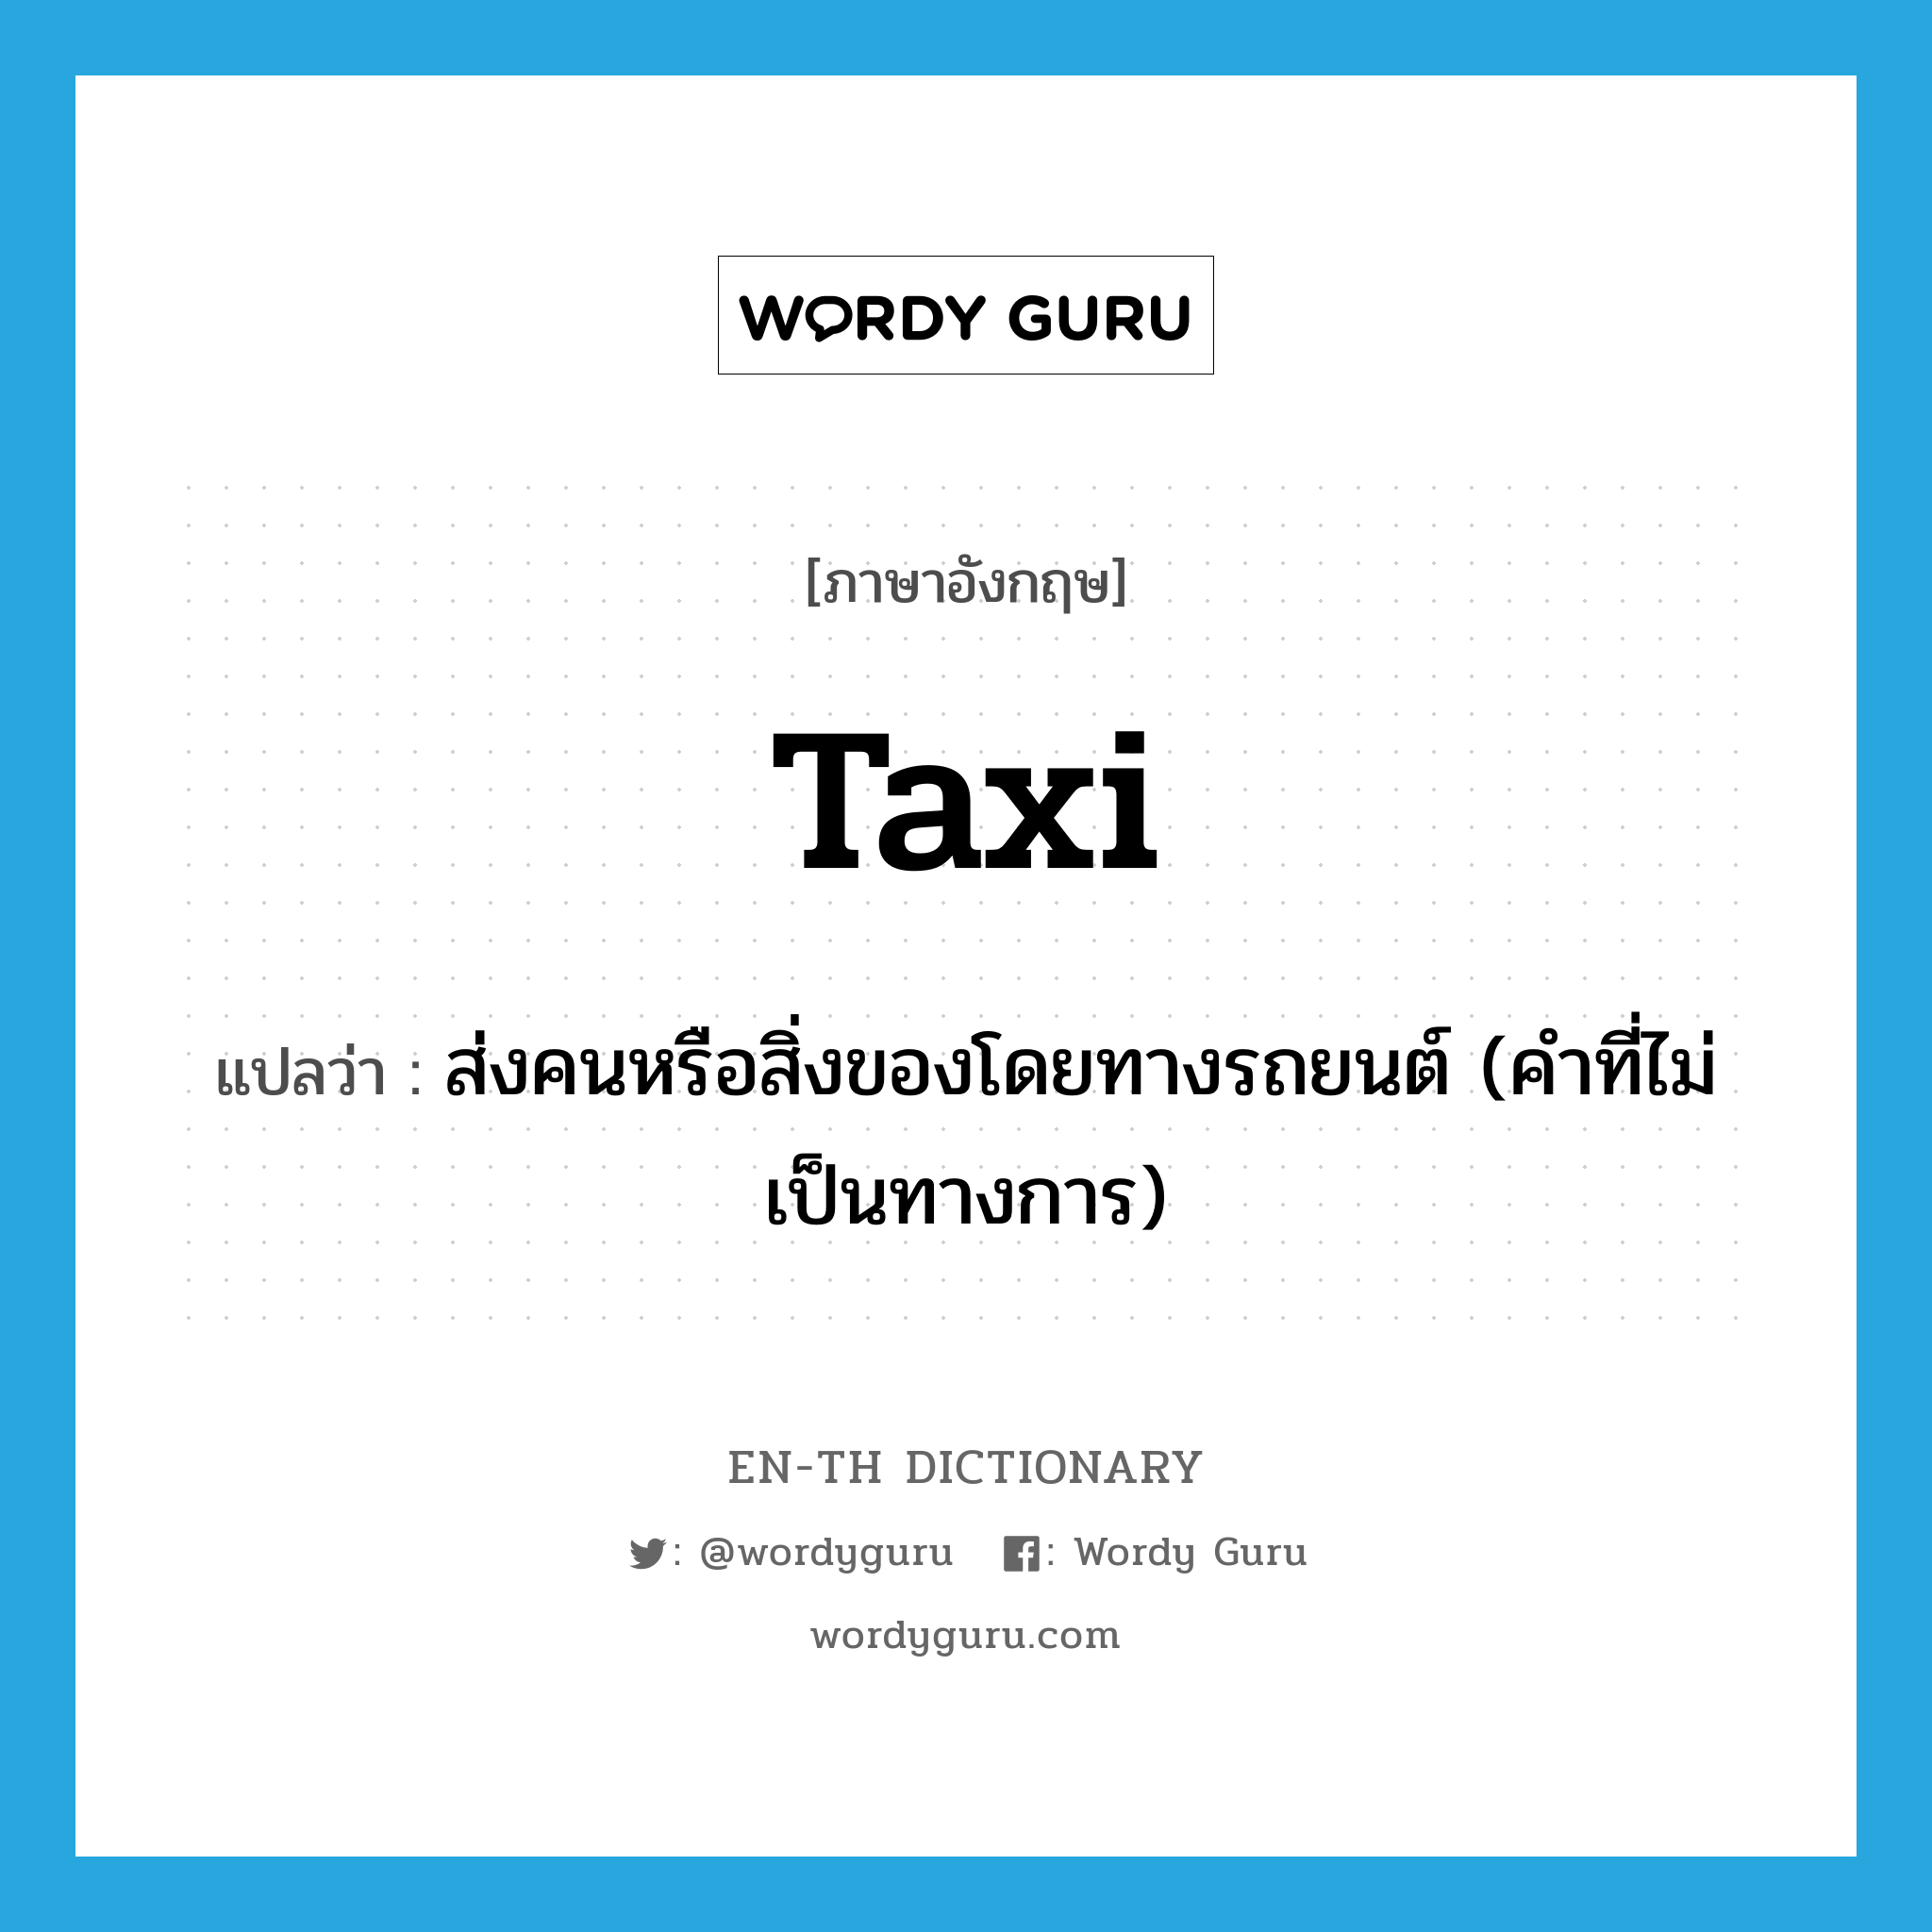 ส่งคนหรือสิ่งของโดยทางรถยนต์ (คำที่ไม่เป็นทางการ) ภาษาอังกฤษ?, คำศัพท์ภาษาอังกฤษ ส่งคนหรือสิ่งของโดยทางรถยนต์ (คำที่ไม่เป็นทางการ) แปลว่า taxi ประเภท VT หมวด VT